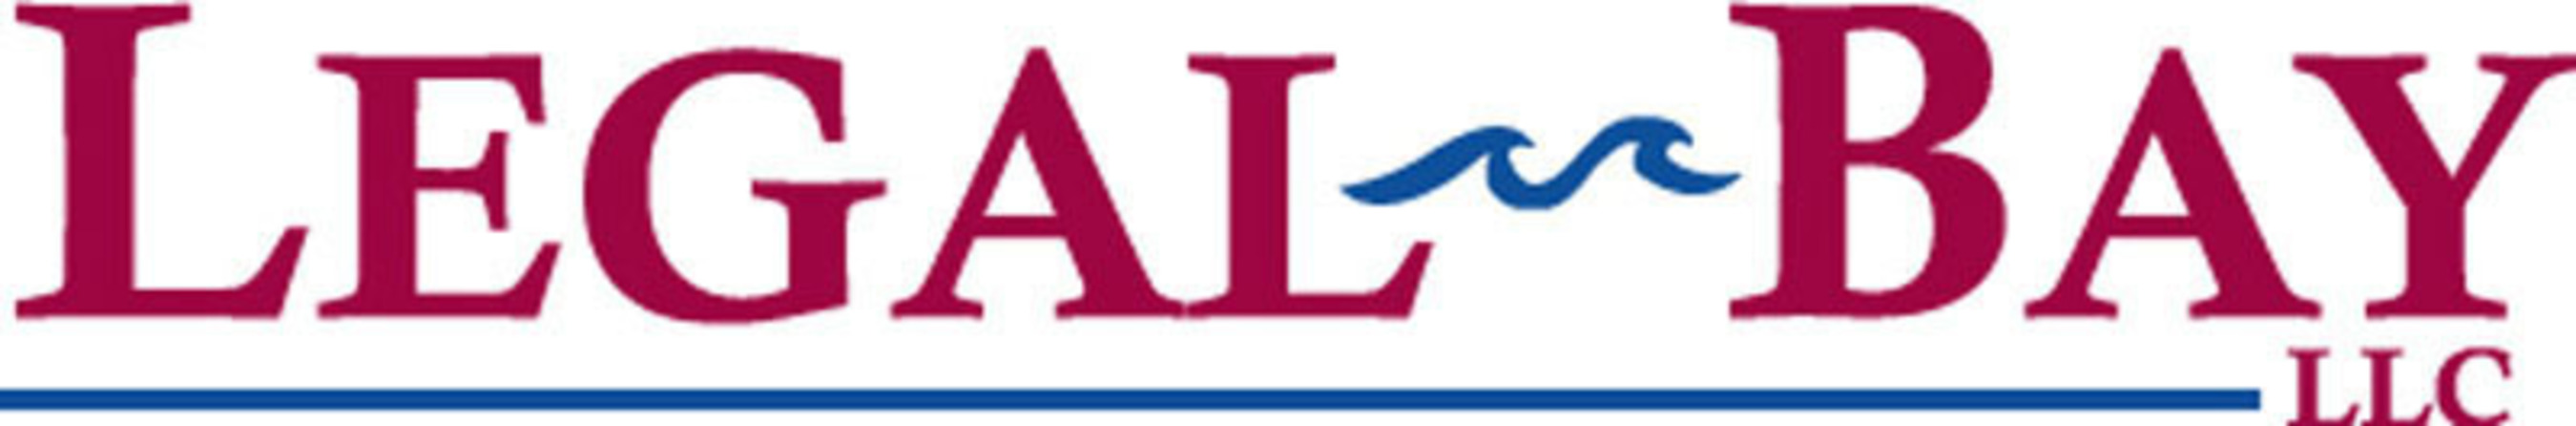 Legal-Bay LLC Logo. (PRNewsFoto/Legal-Bay) (PRNewsFoto/LEGAL-BAY)